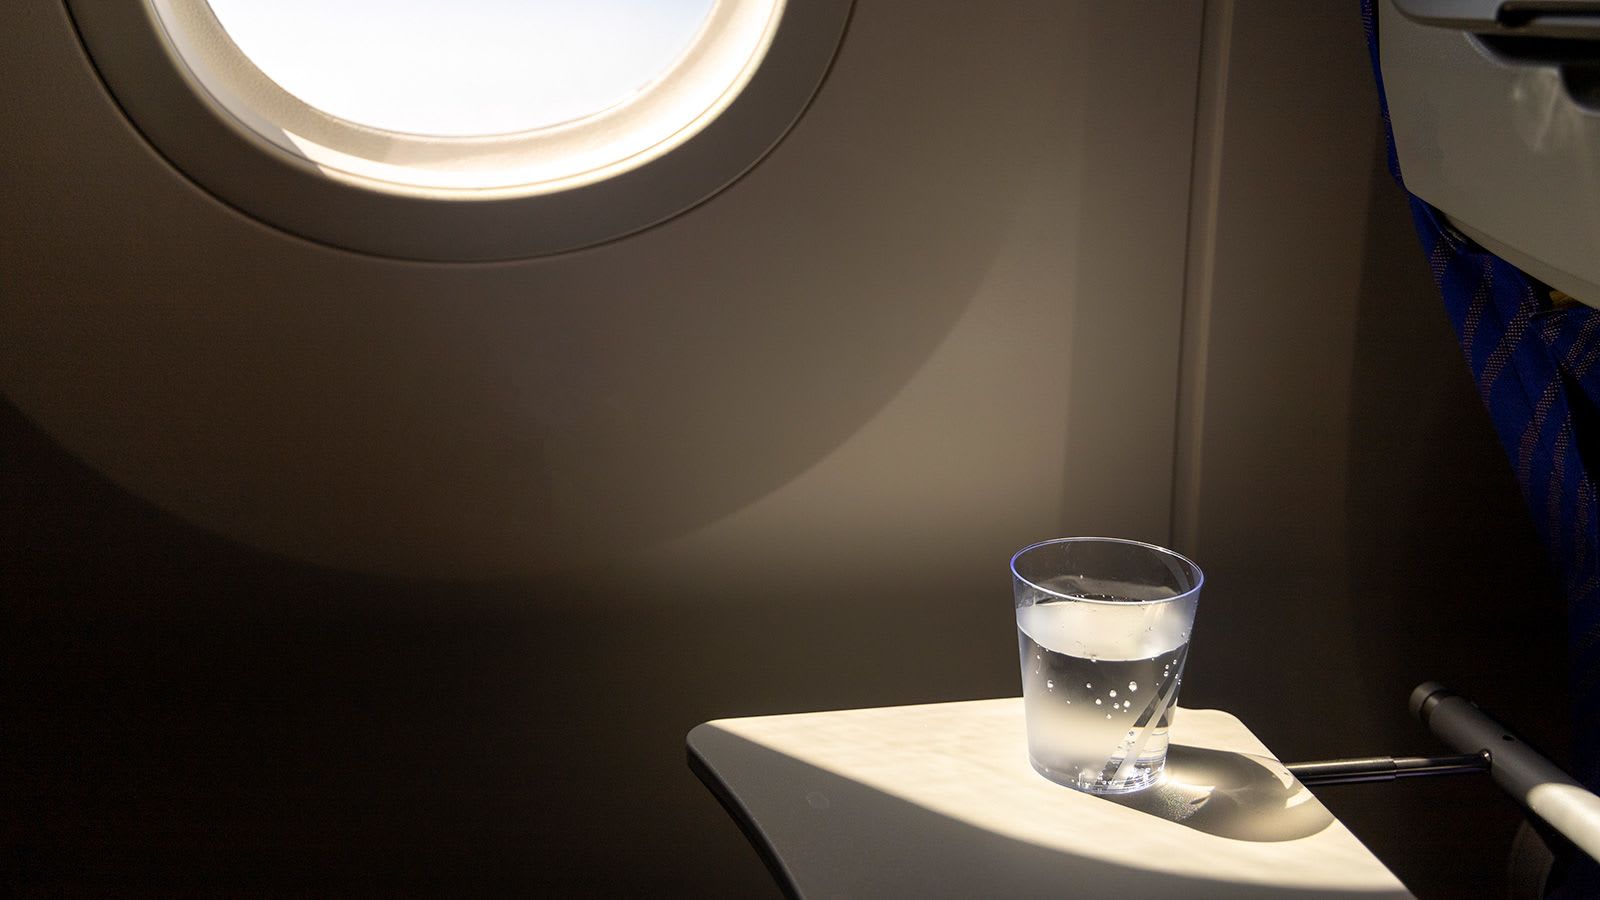 ماذا يحدث لجسمك خلال رحلة طيران طويلة المدى؟